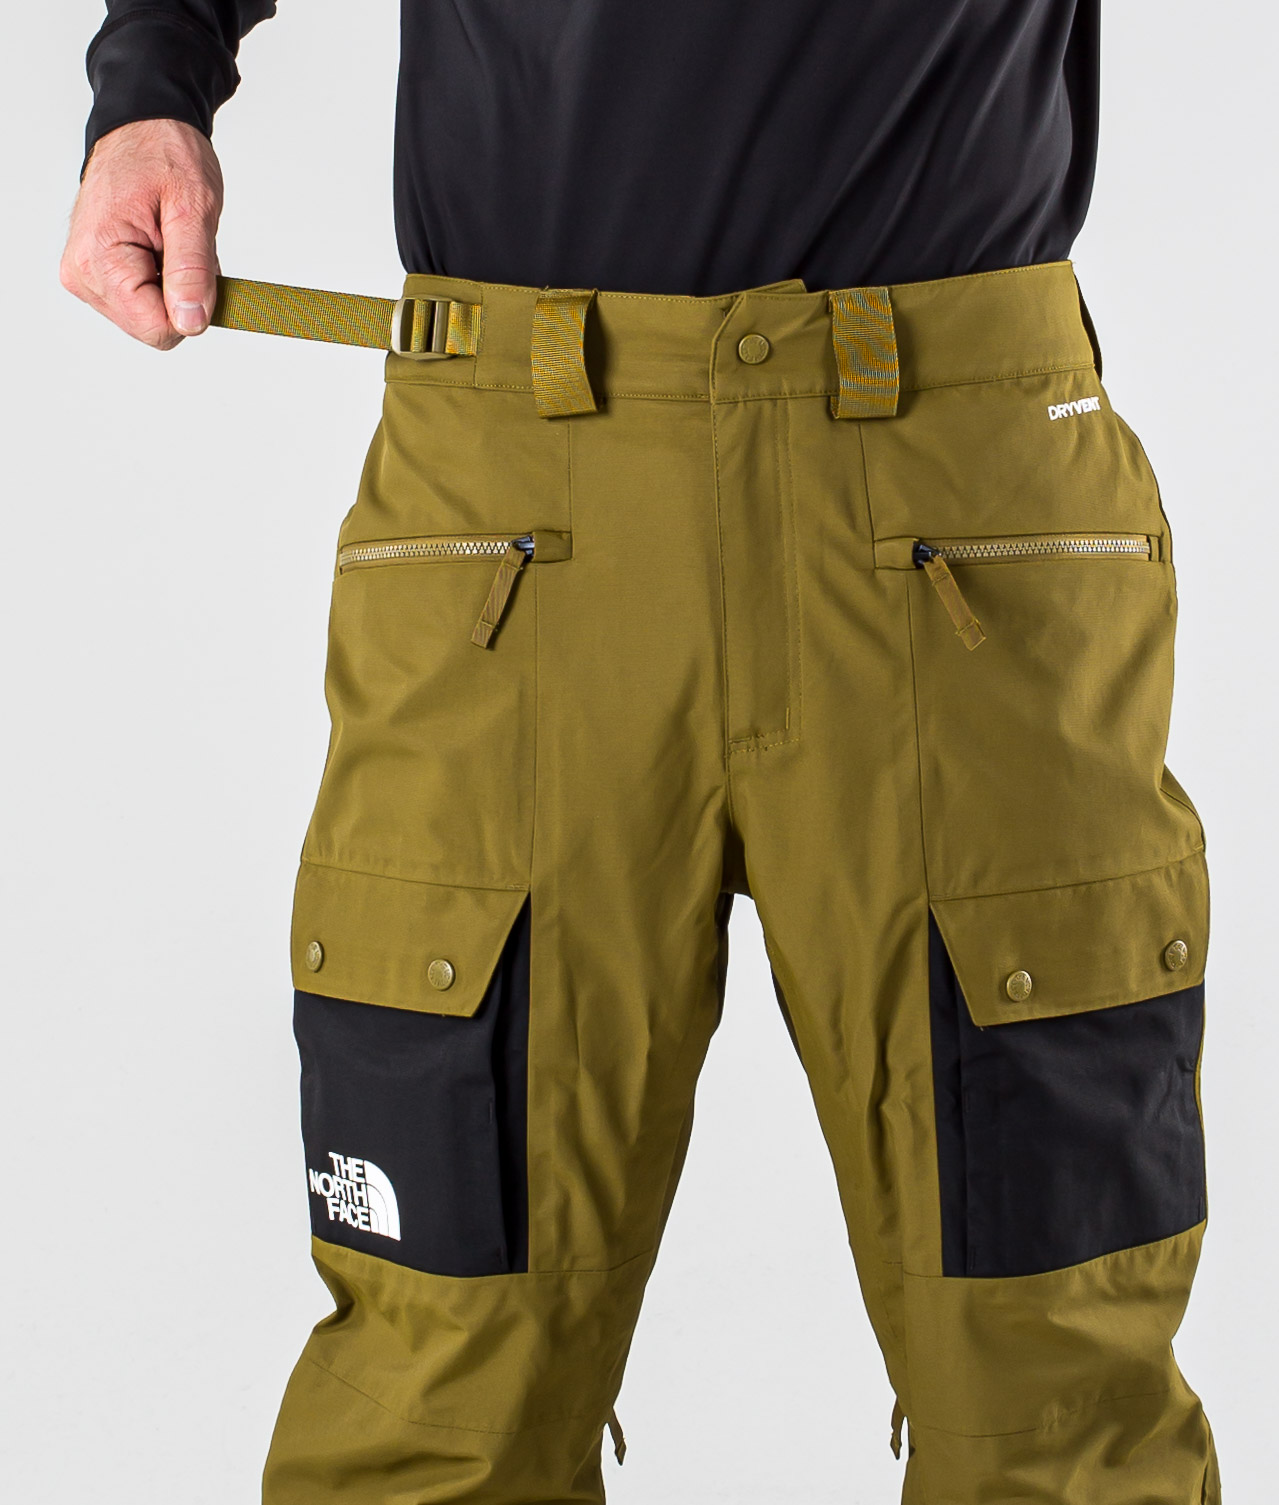 slashback cargo pants